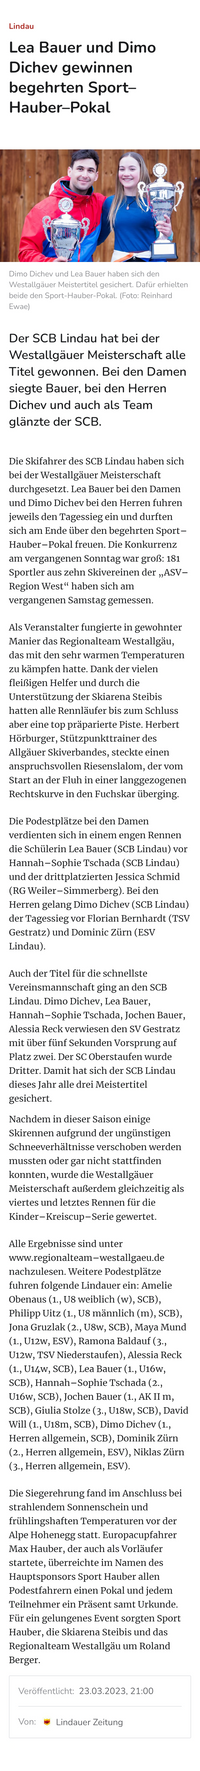 23.03.2023 Lindauer Zeitung